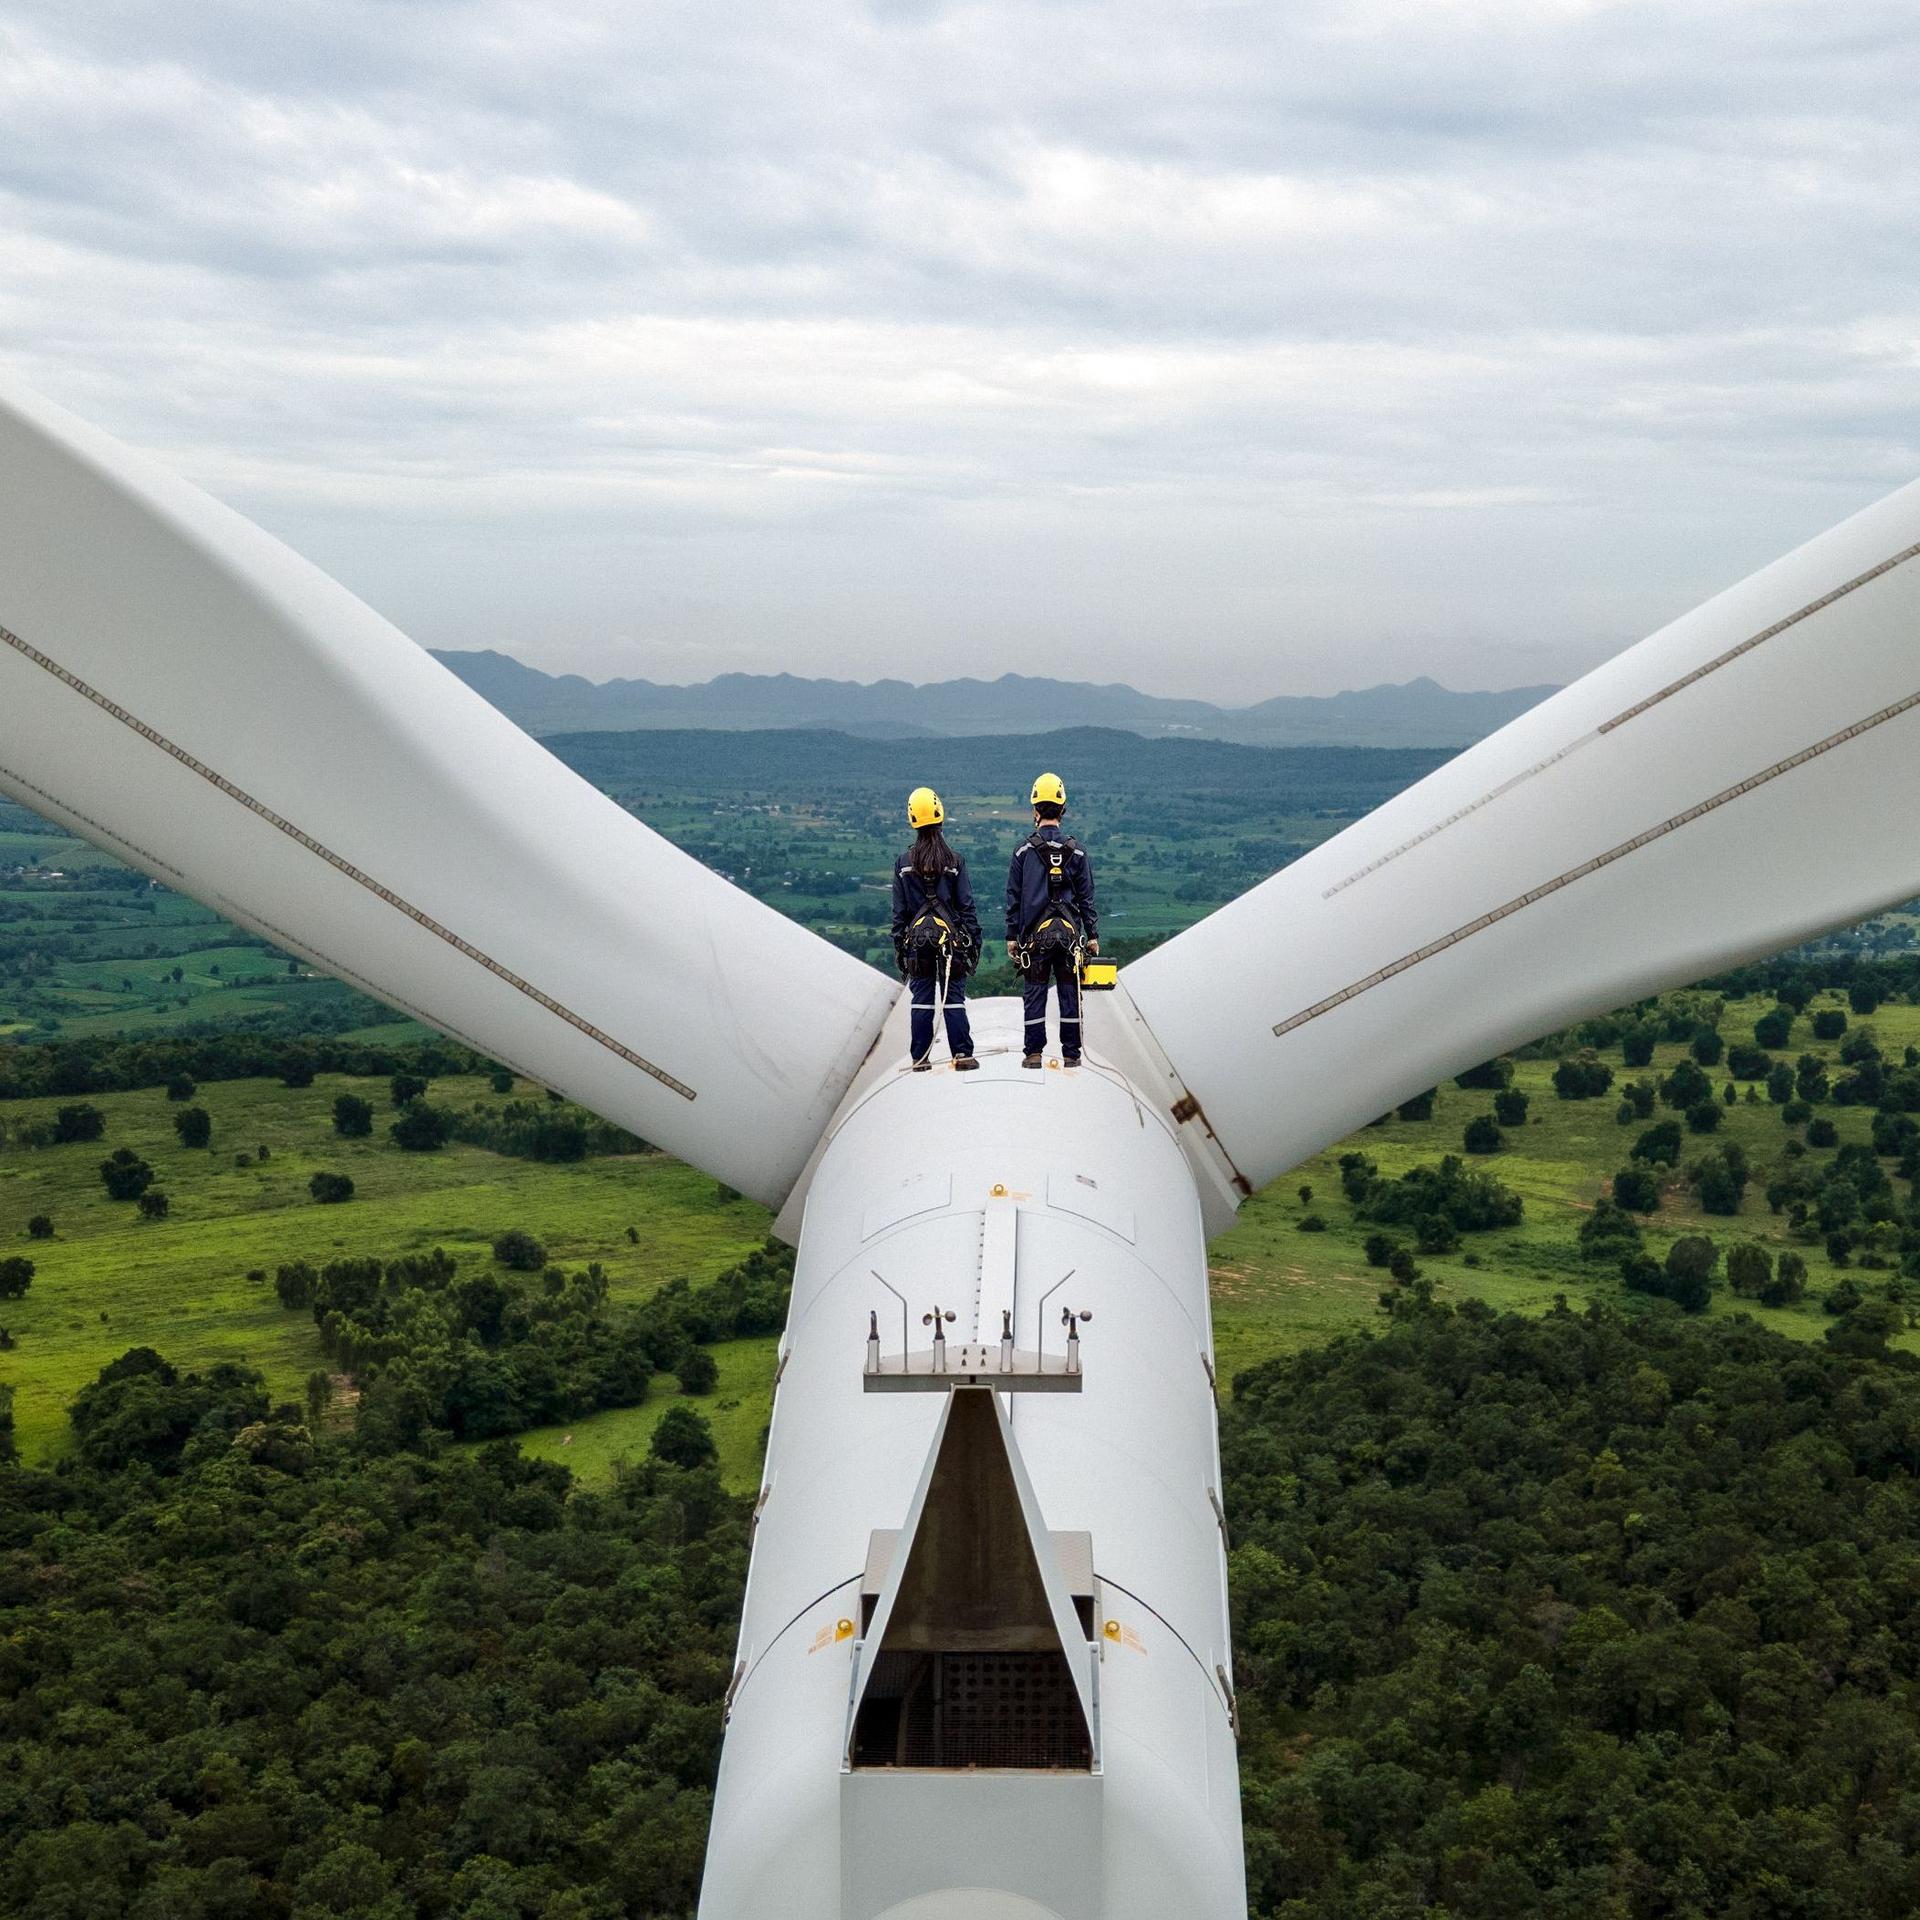 Zwei Elektroingenieure mit Schutzausrüstung stehen oben auf einem Windrad zwischen den Windblättern. Sie schauen in die Landschaft.